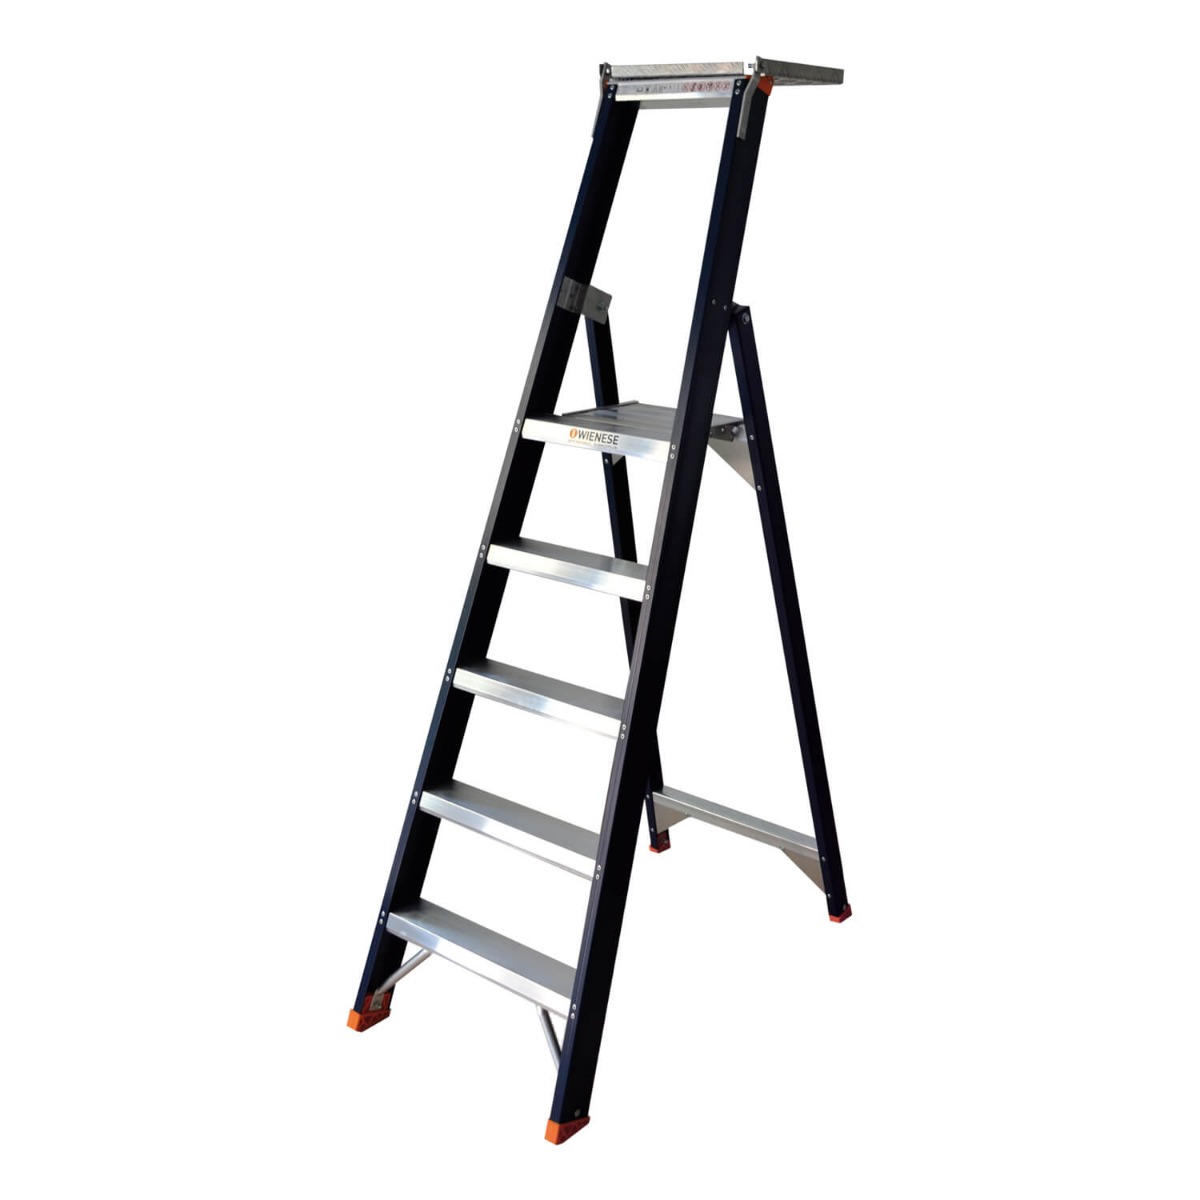 De hoogte met trappen en ladders - Blog